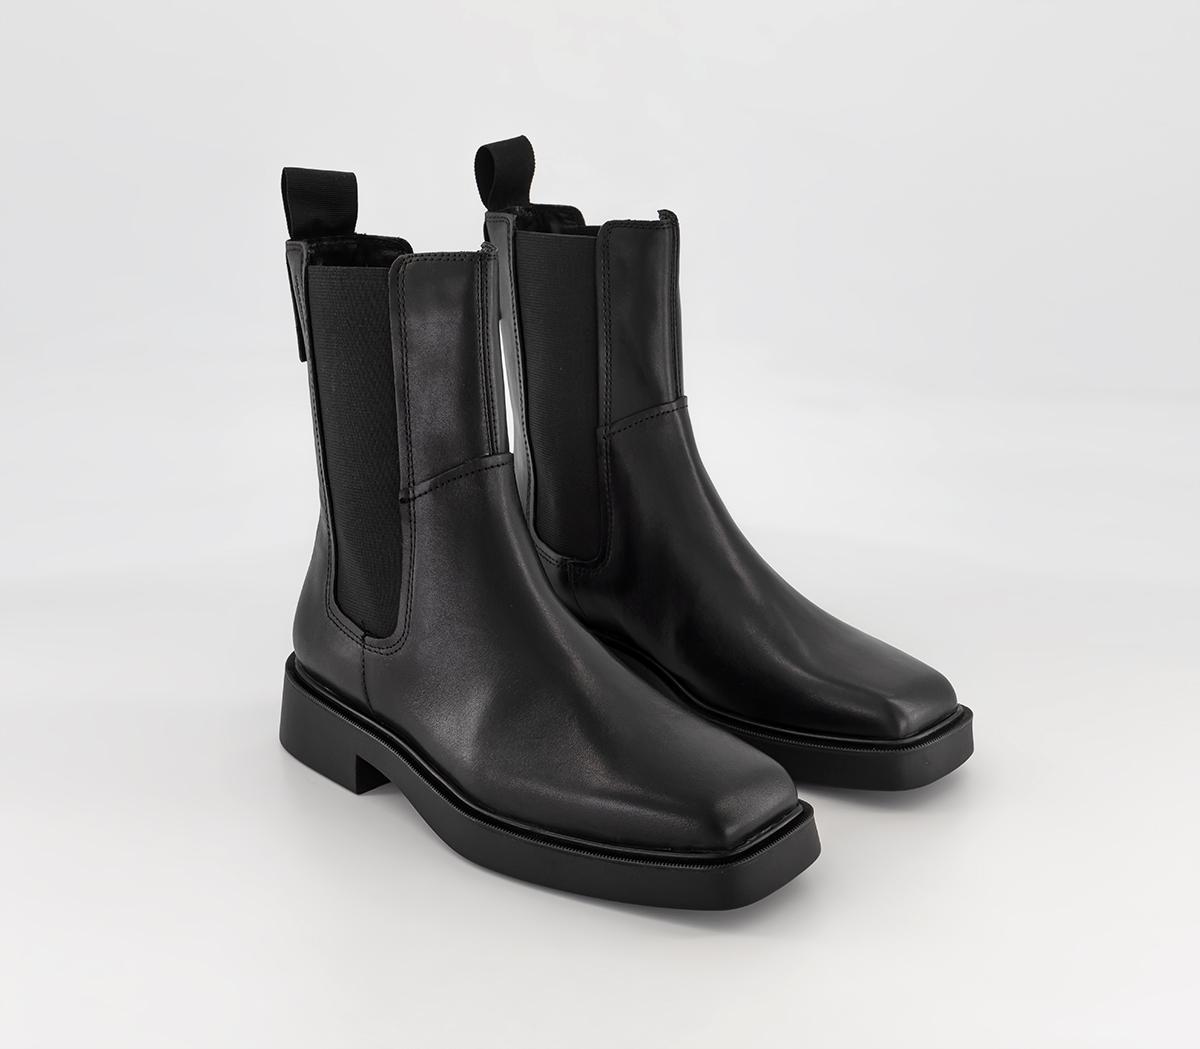 Vagabond Shoemakers Jillian Chelsea Boots Black - Women's Ankle Boots